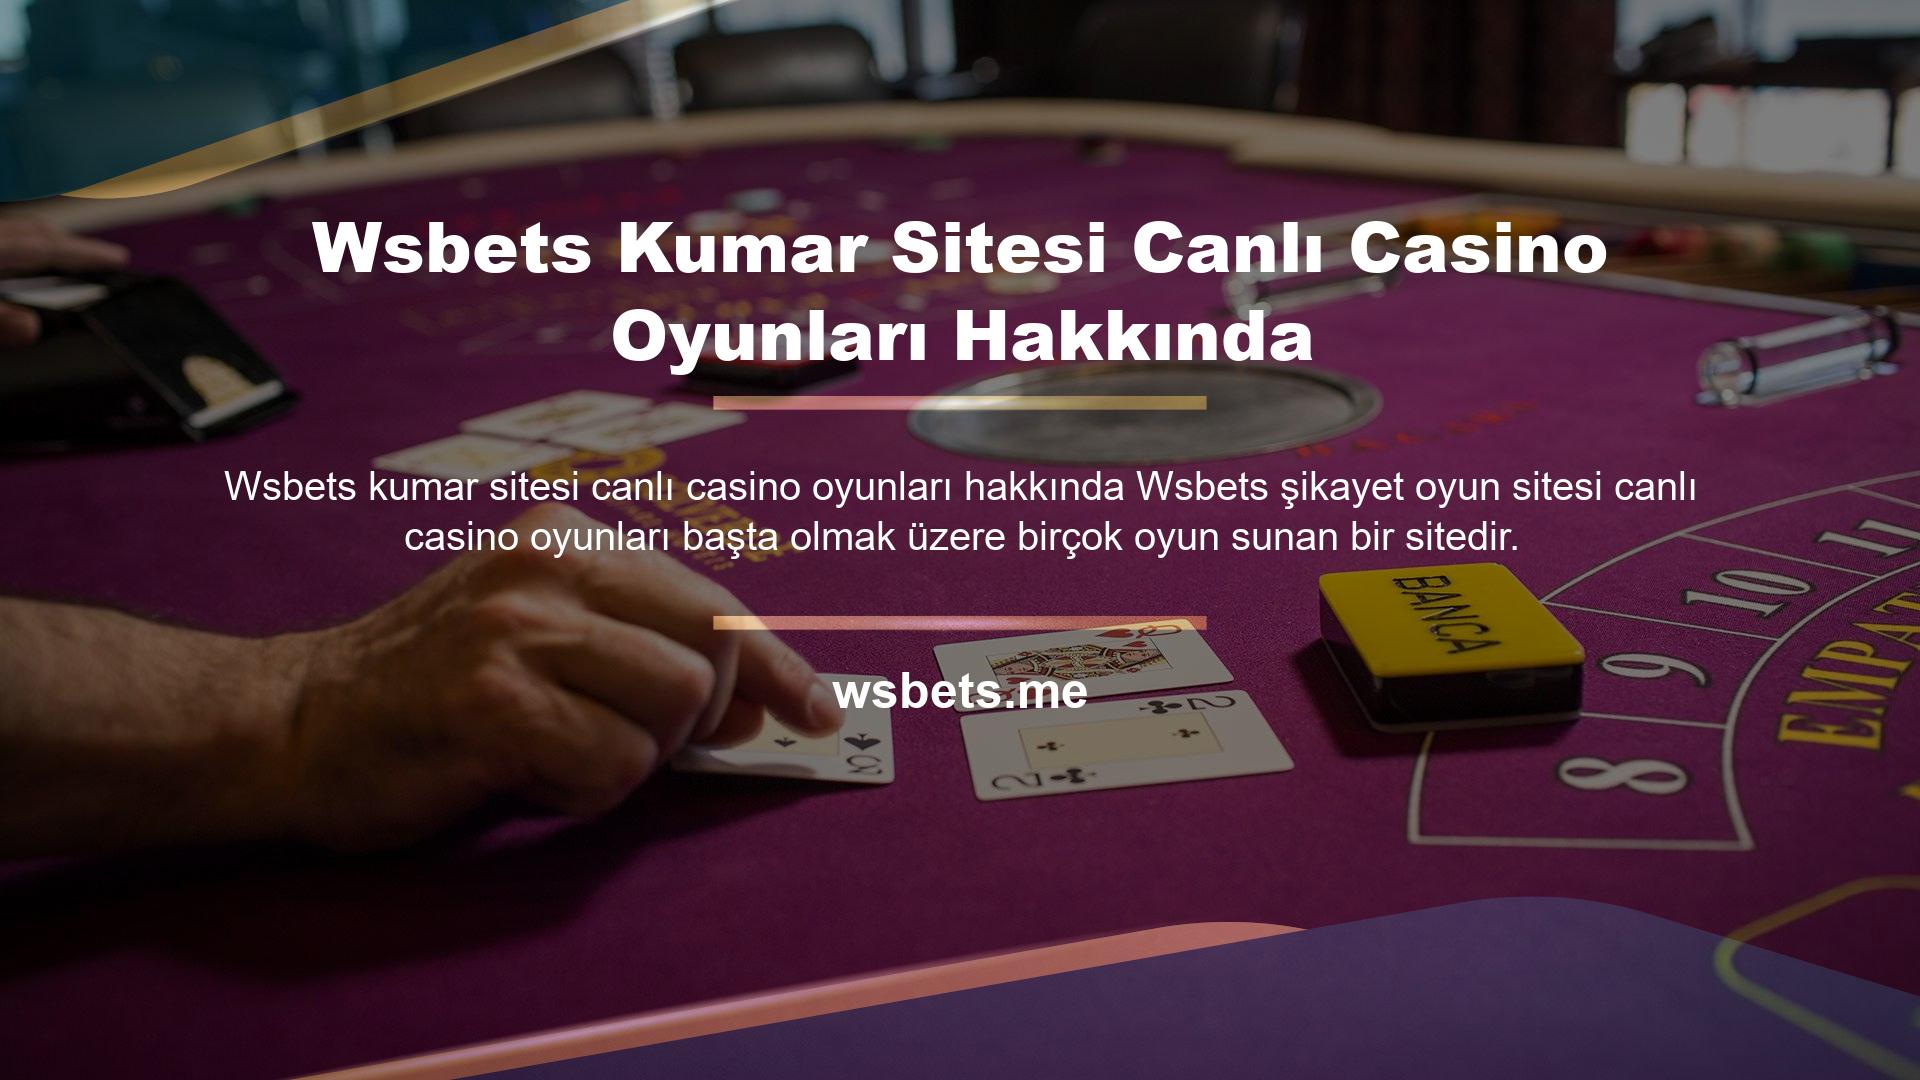 Sitenin ana sayfasında spor bahisleri, sanal spor oyunları, klasik poker oyunları gibi birçok detaylı oyun yer almaktadır